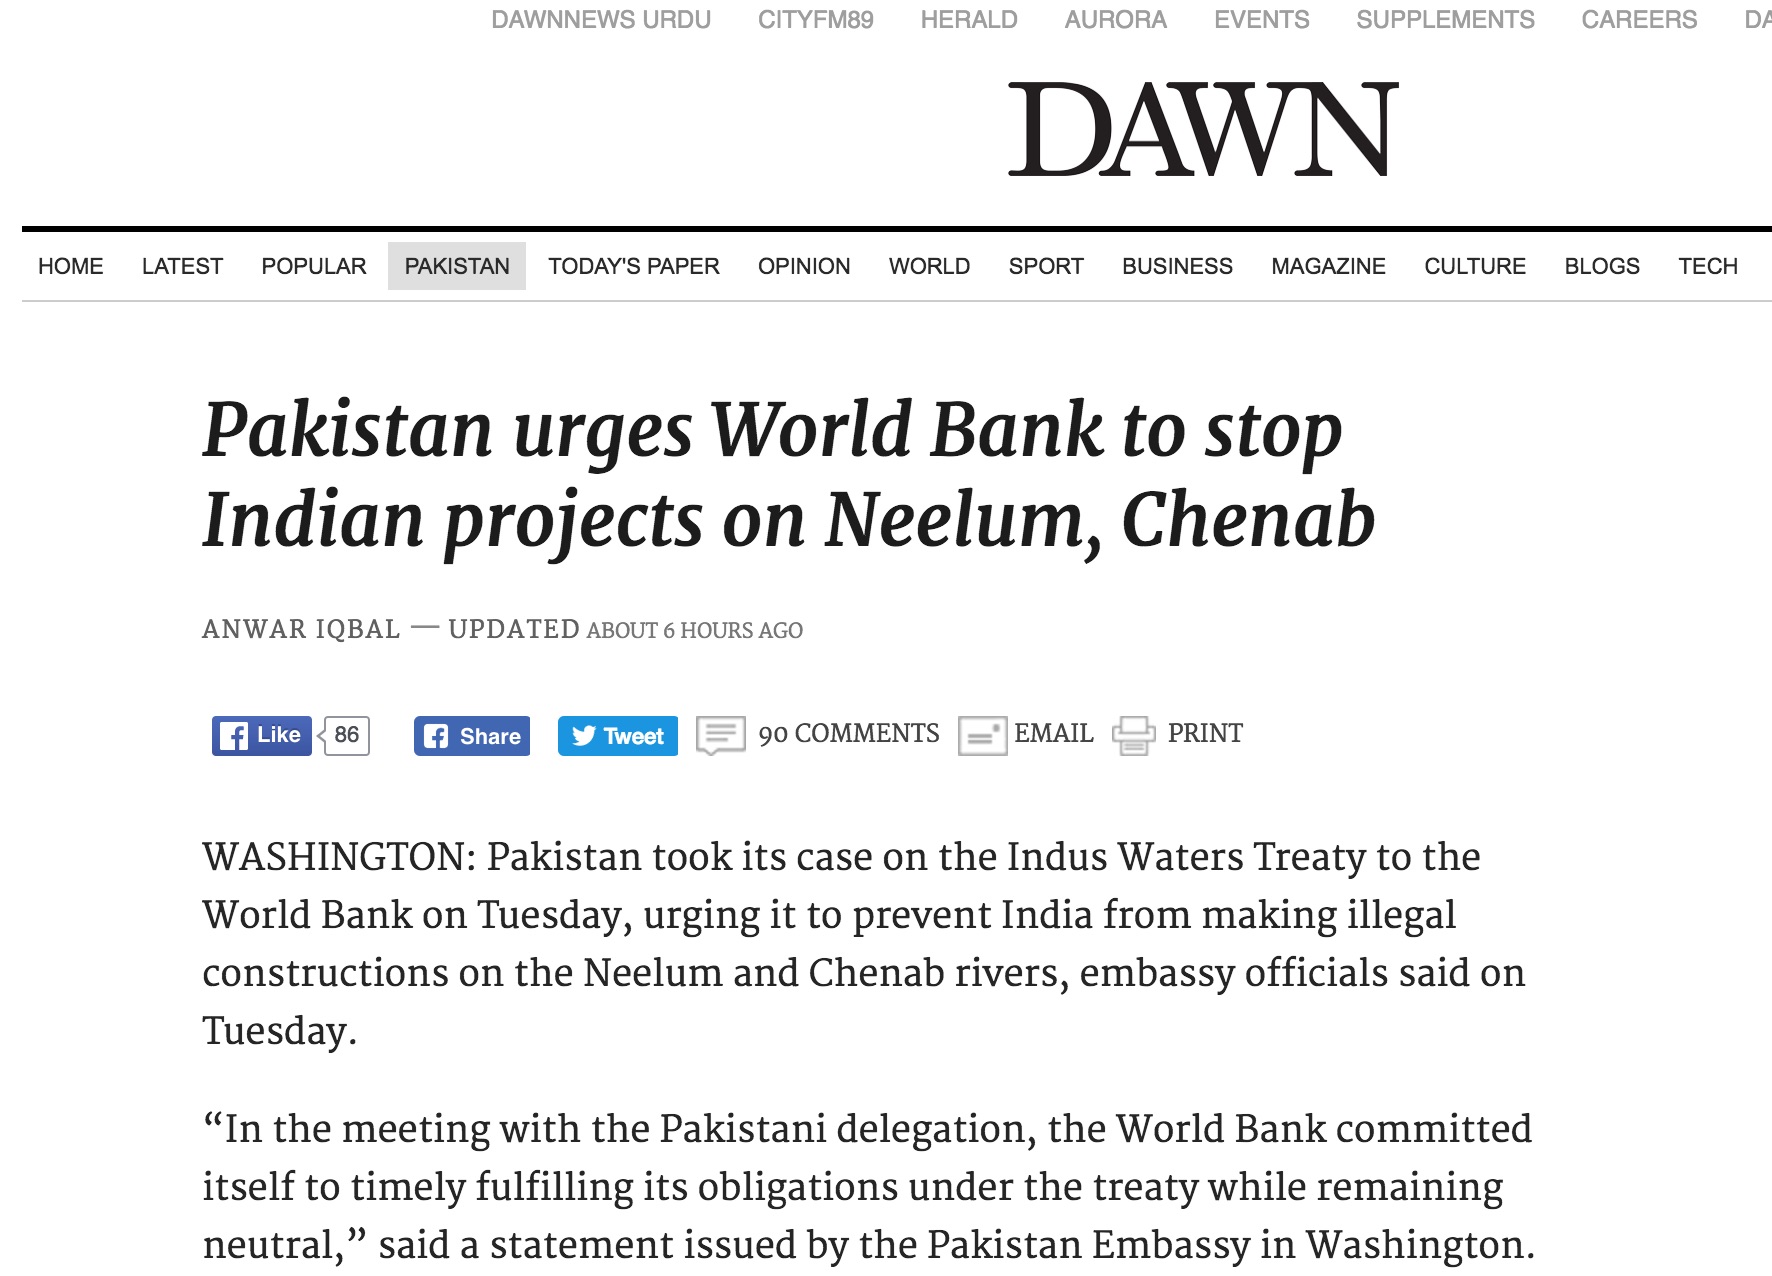 C'est la deuxième fois depuis la signature du traité de l'Indus en 1960 que la Banque mondiale doit trancher dans un litige entre les deux pays. Copie d'écran de Dawn, le 28 septembre 2016.